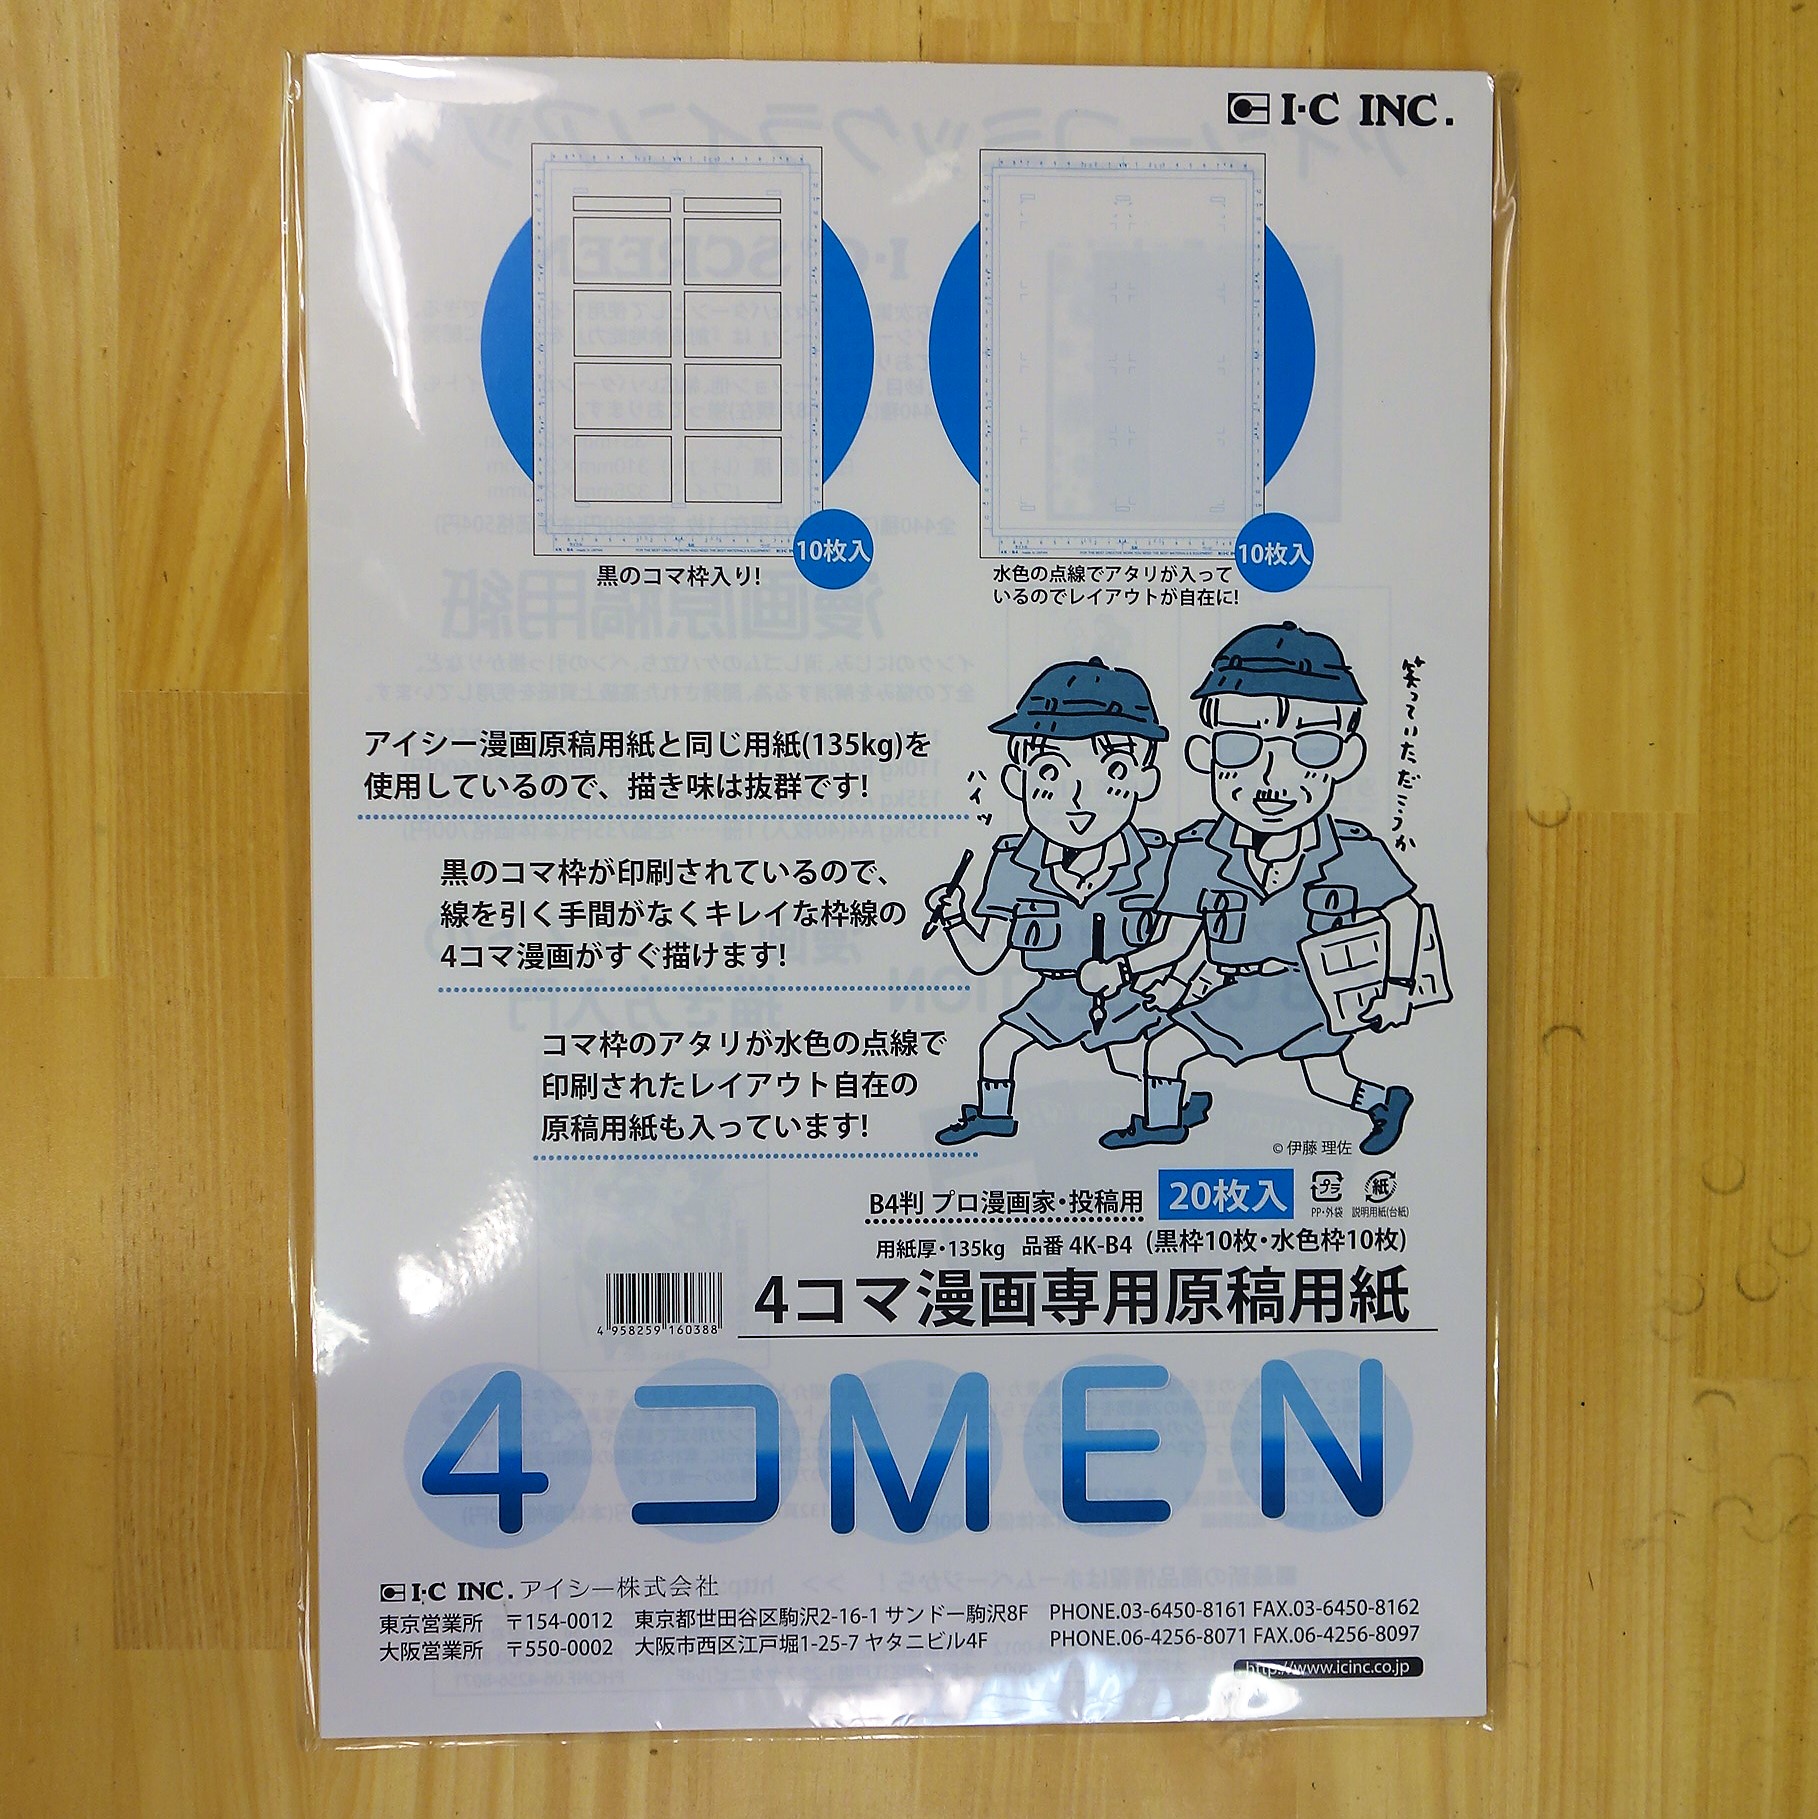 ユーアーツ / アイシー 4コマ漫画専用原稿用紙「4コＭＥＮ」Ａ4 135kg